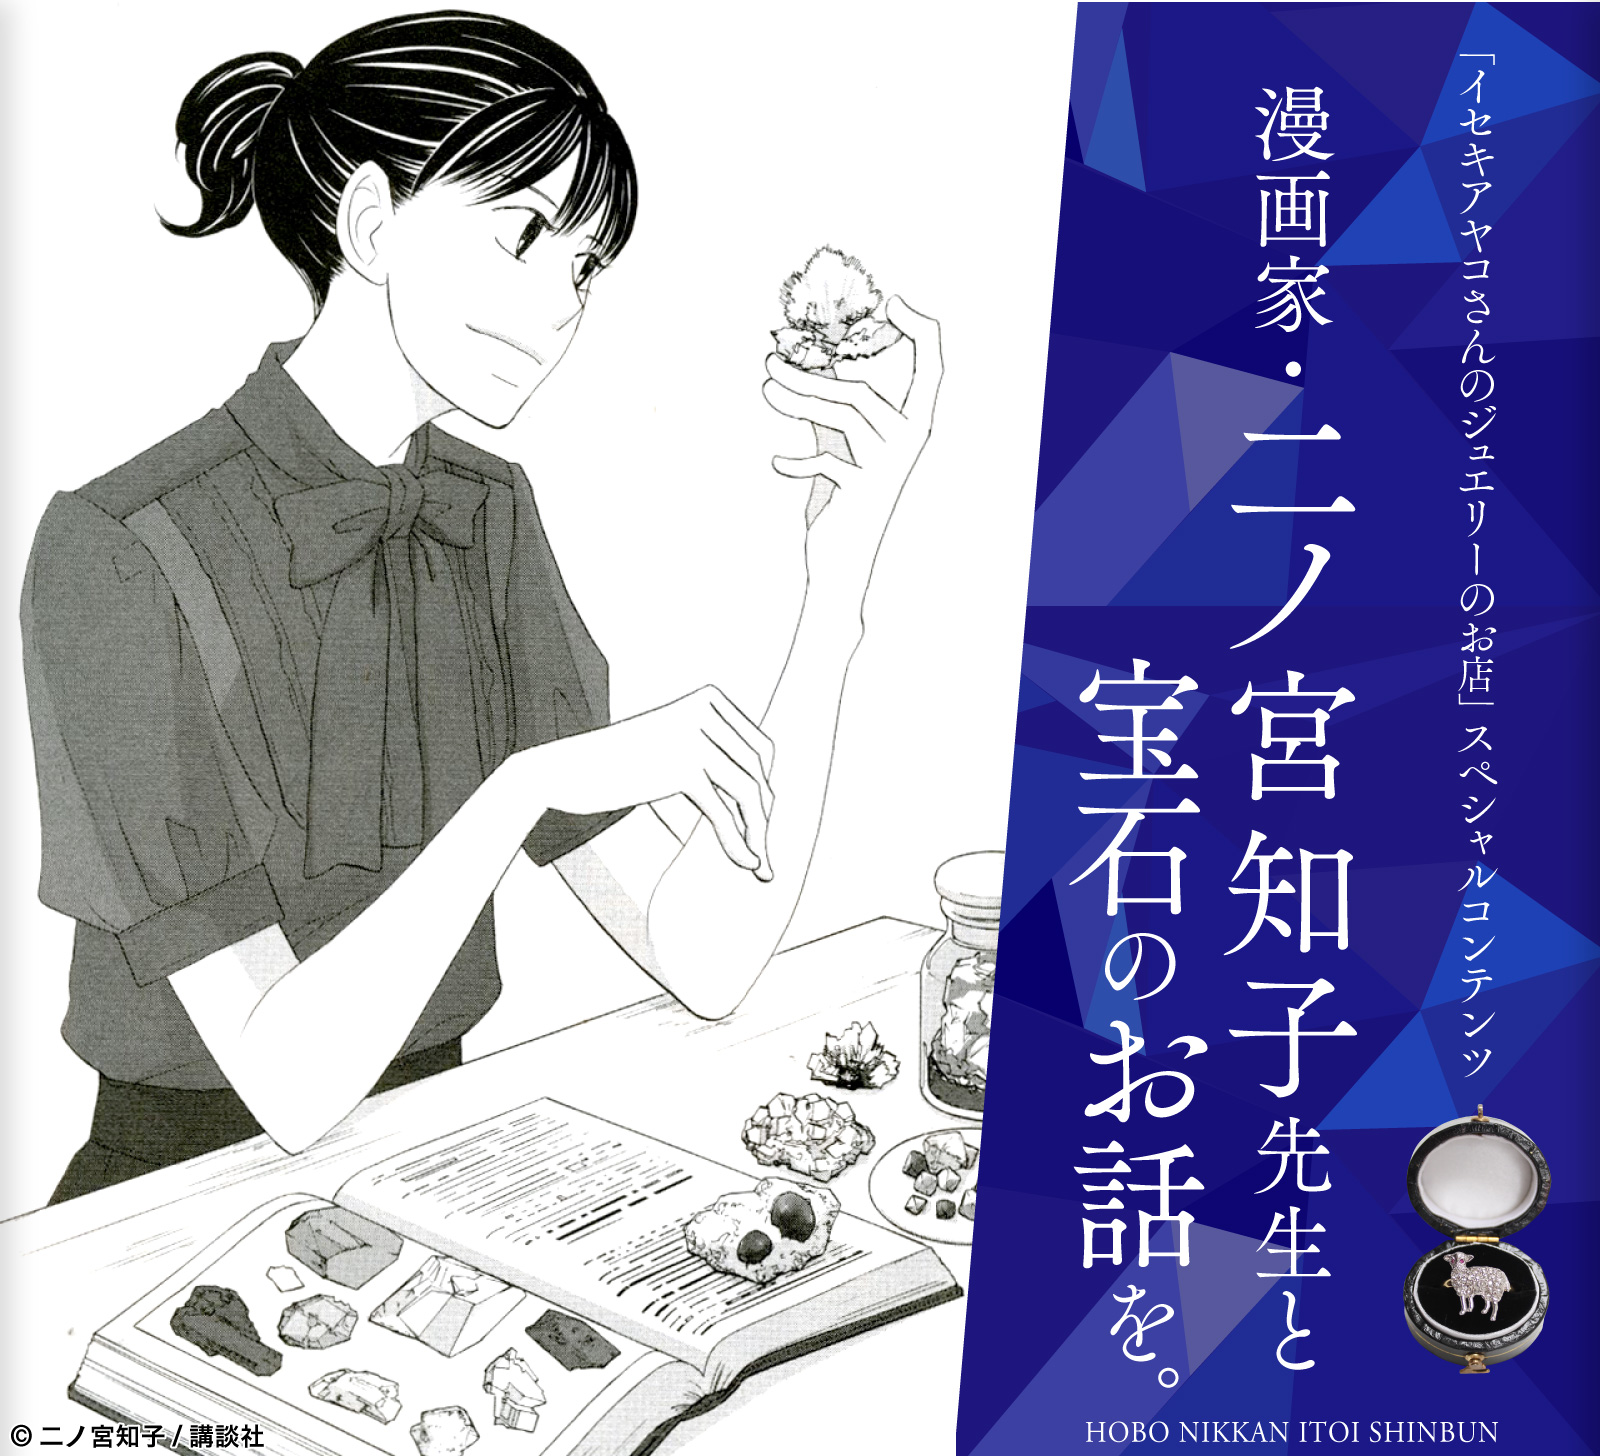 「イセキアヤコさんのジュエリーのお店」
スペシャルコンテンツ

漫画家・二ノ宮知子先生と
宝石のお話を。